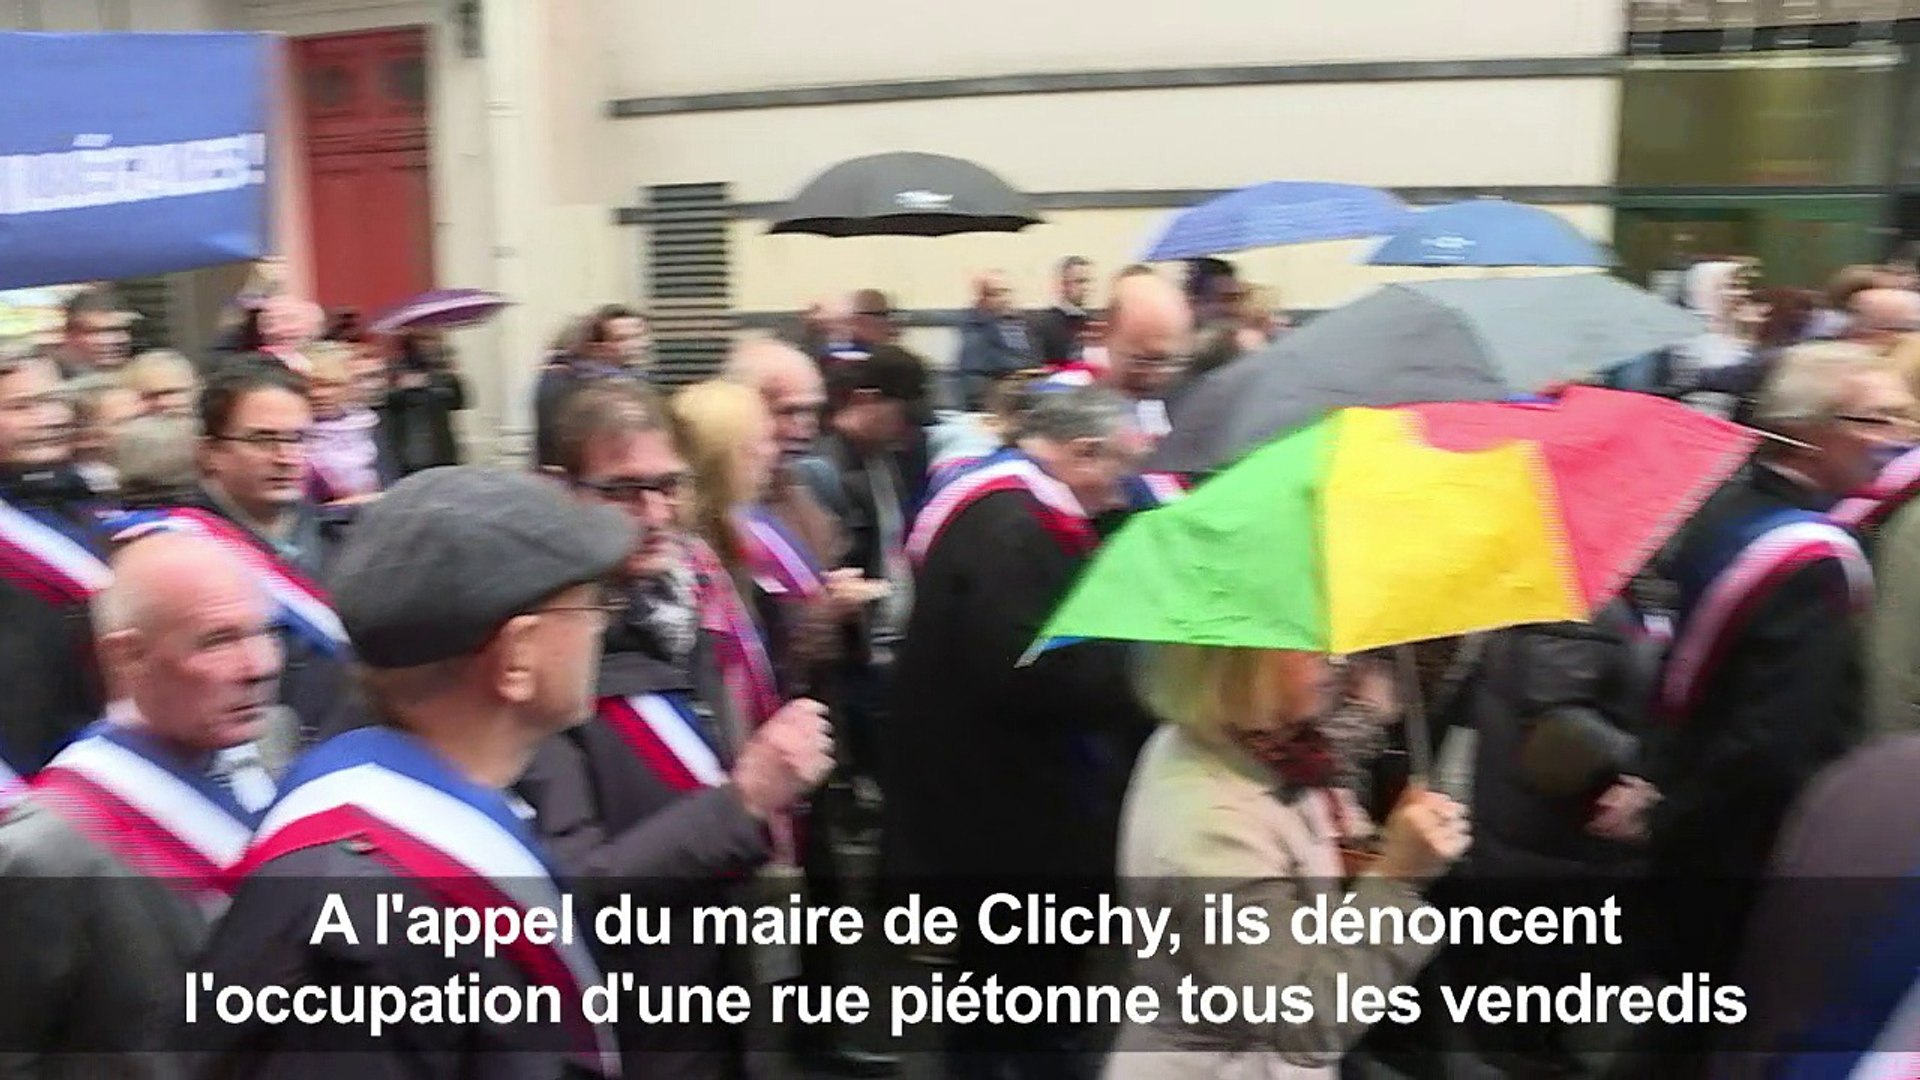 Des élus tentent d'empêcher une prière de rue à Clichy (92) - Vidéo  Dailymotion